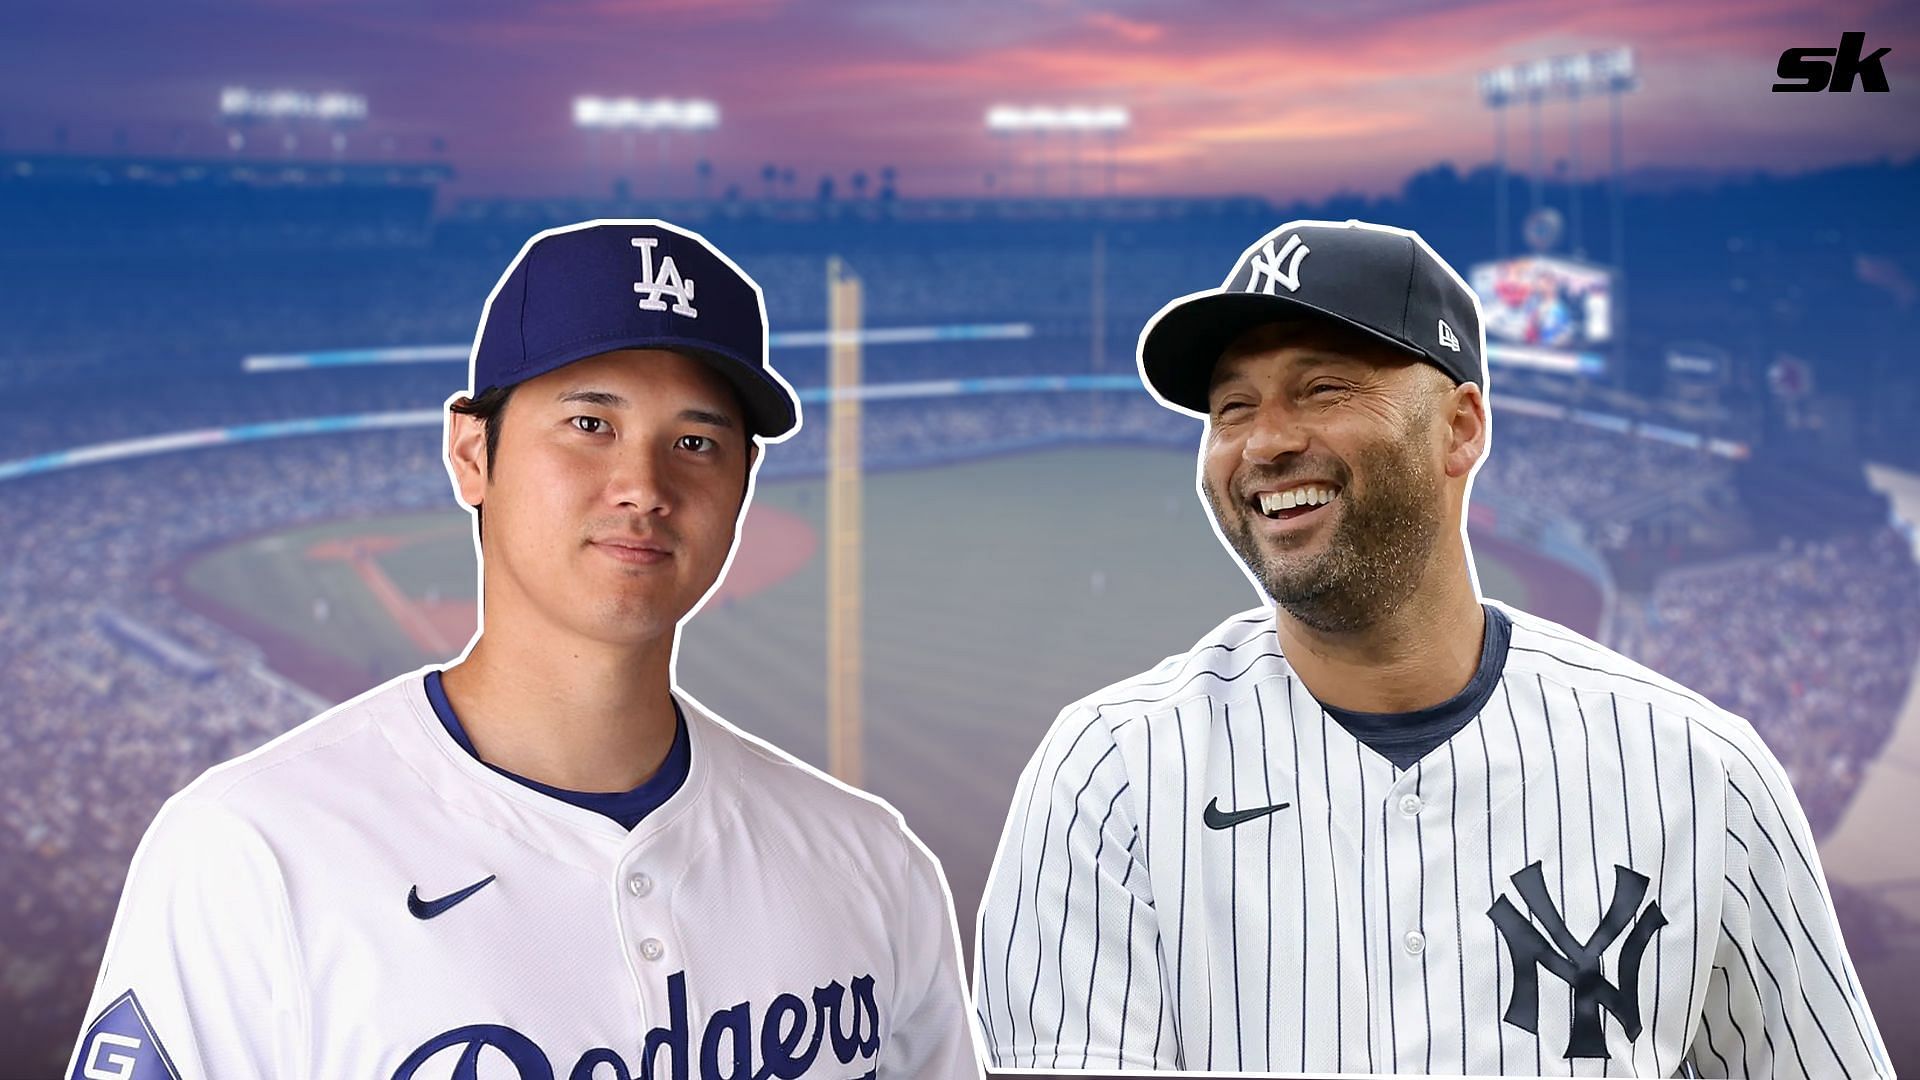 Two-way phenom Shohei Ohtani surpasses Derek Jeter in worldwide jersey sales ahead of Dodgers debut